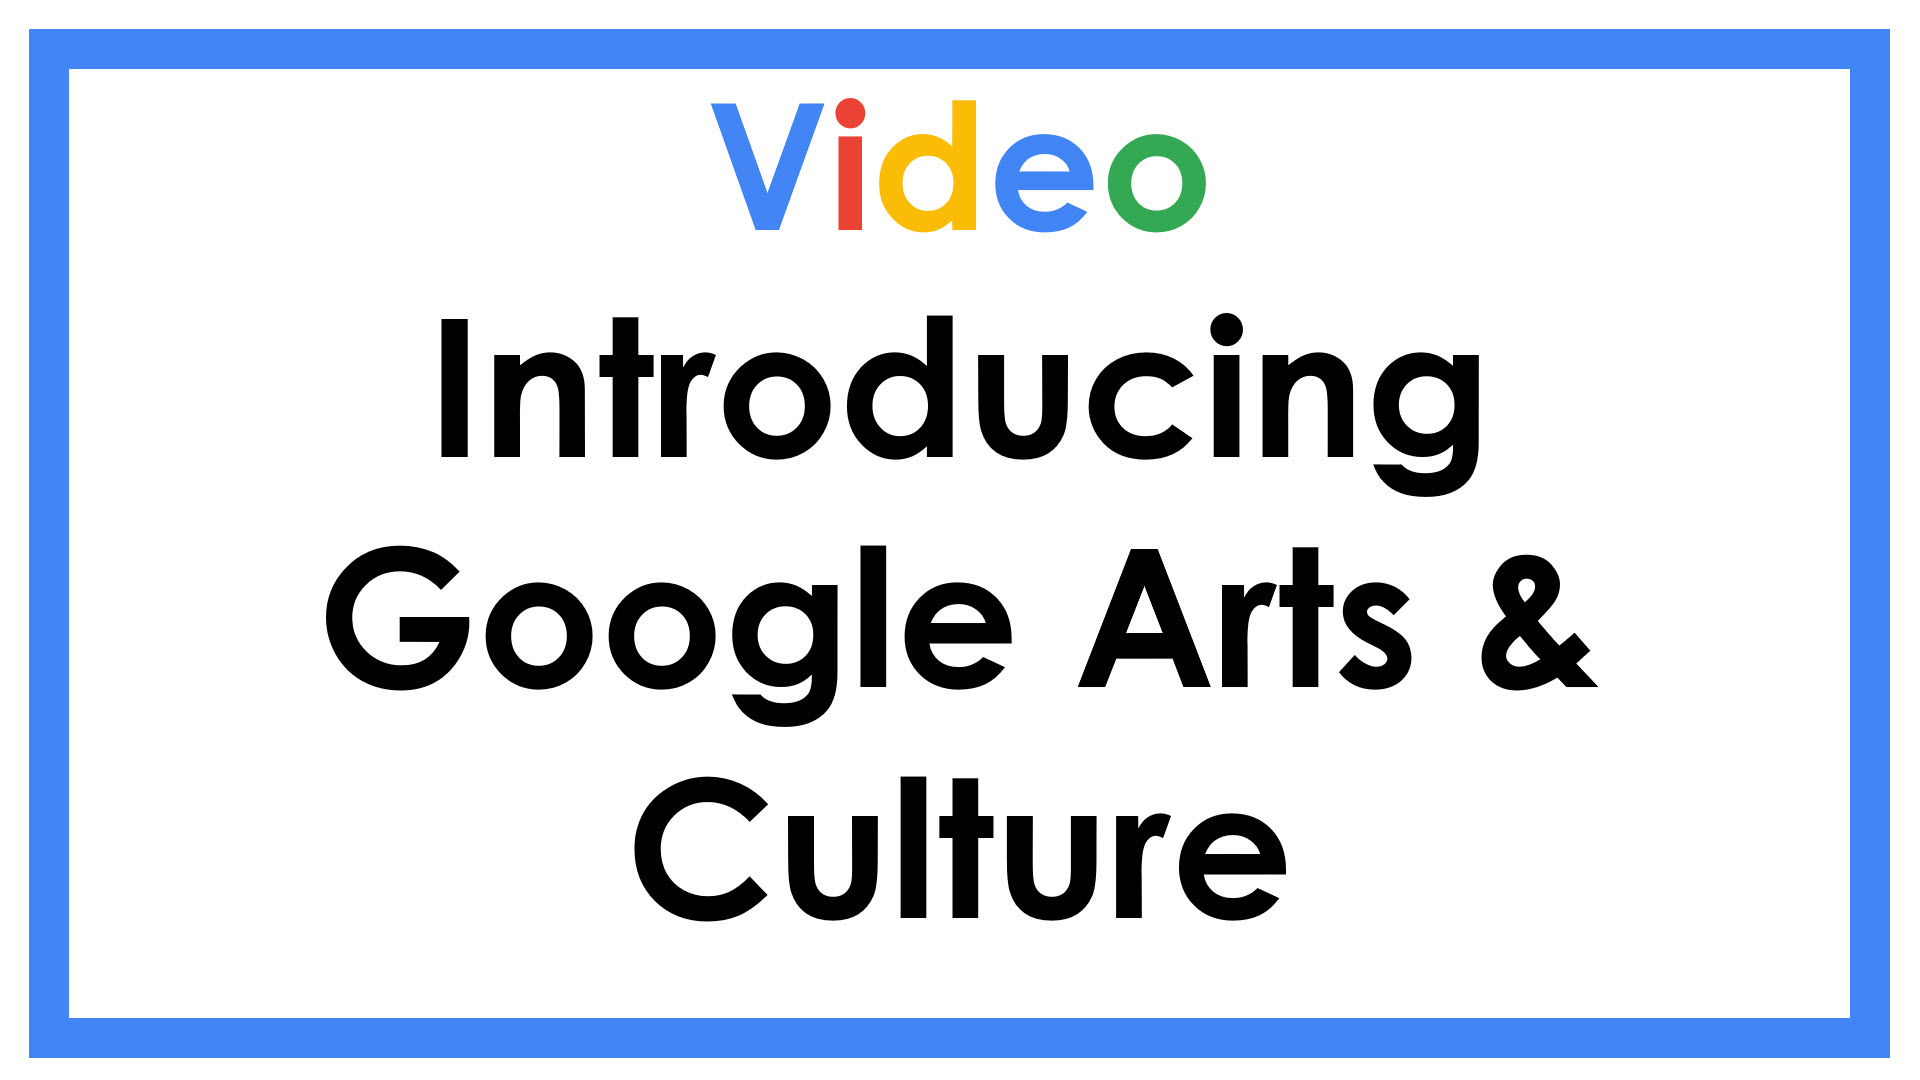 Video Introducing Google Arts & Culture